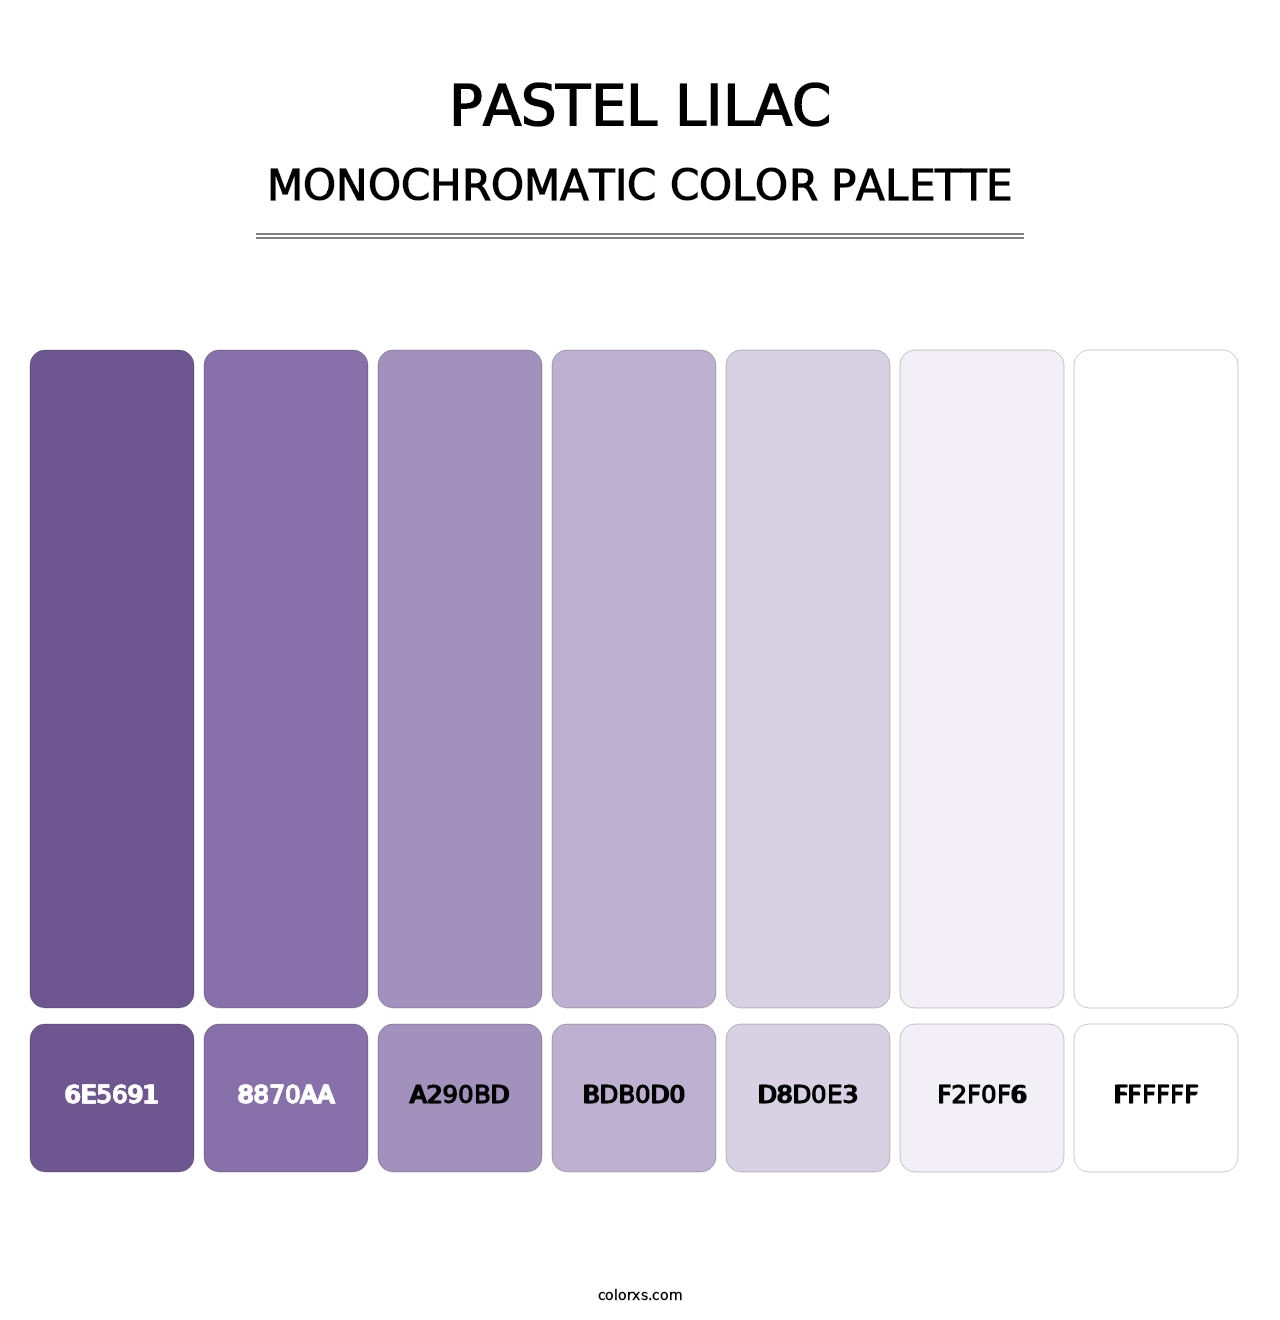 Pastel Lilac - Monochromatic Color Palette